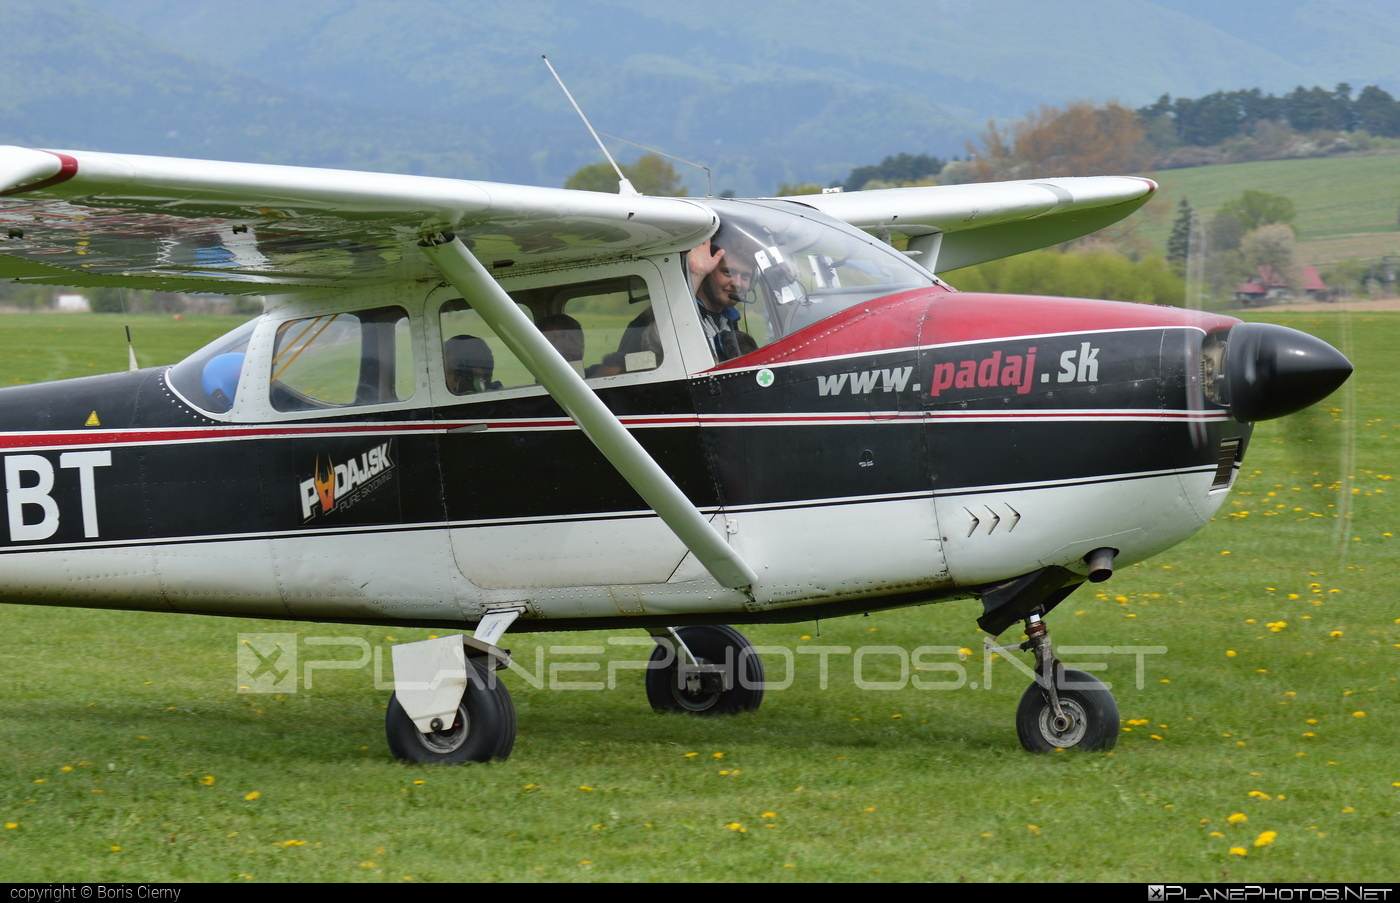 Cessna 182E Skylane - OM-DBT operated by Slovenský národný aeroklub (Slovak National Aeroclub) #cessna #cessna182 #cessna182e #cessna182eskylane #cessna182skylane #cessnaskylane